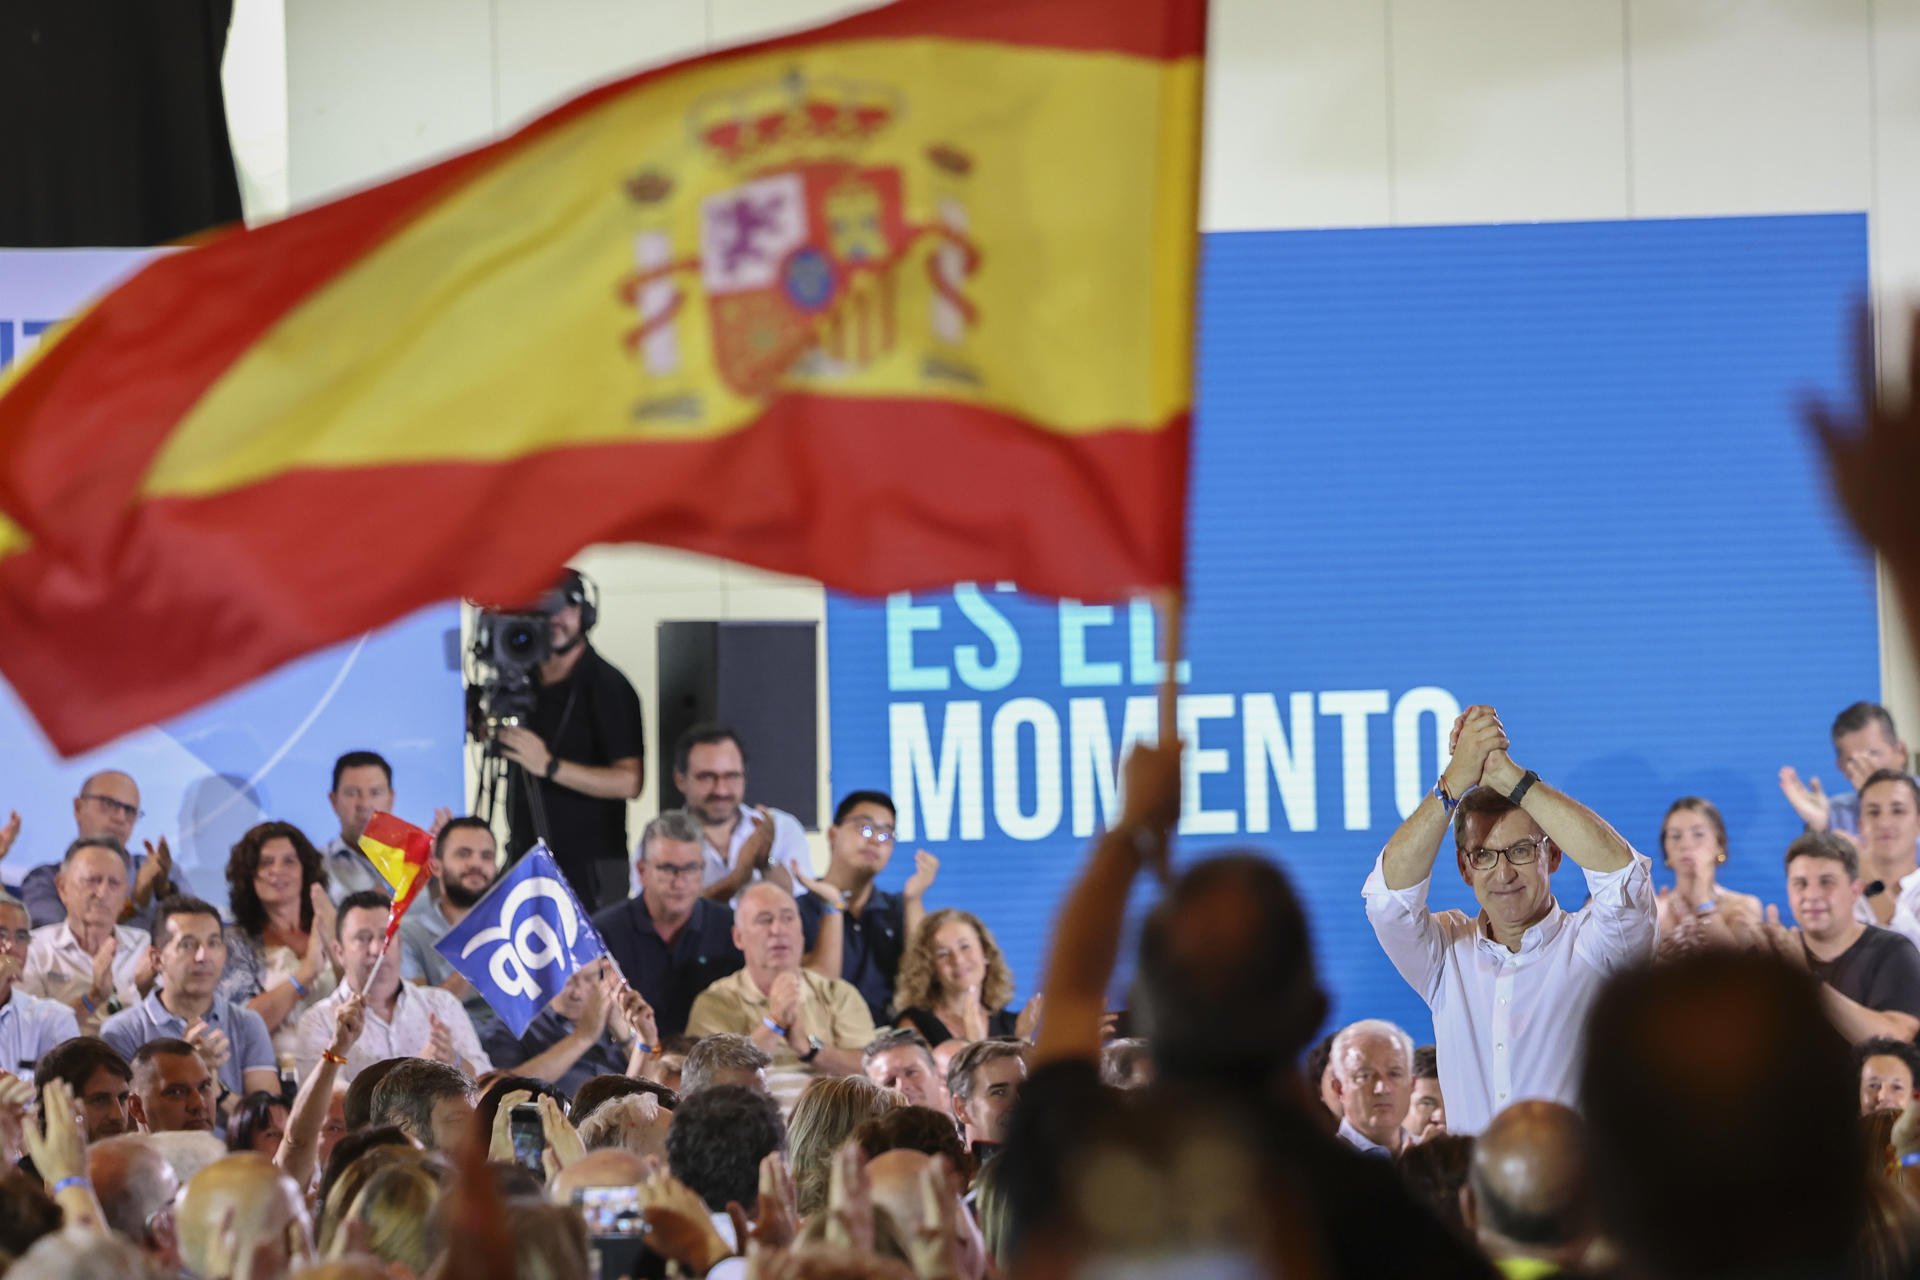 Feijóo entona un discurso ultra contra el independentismo en el ecuador de la campaña